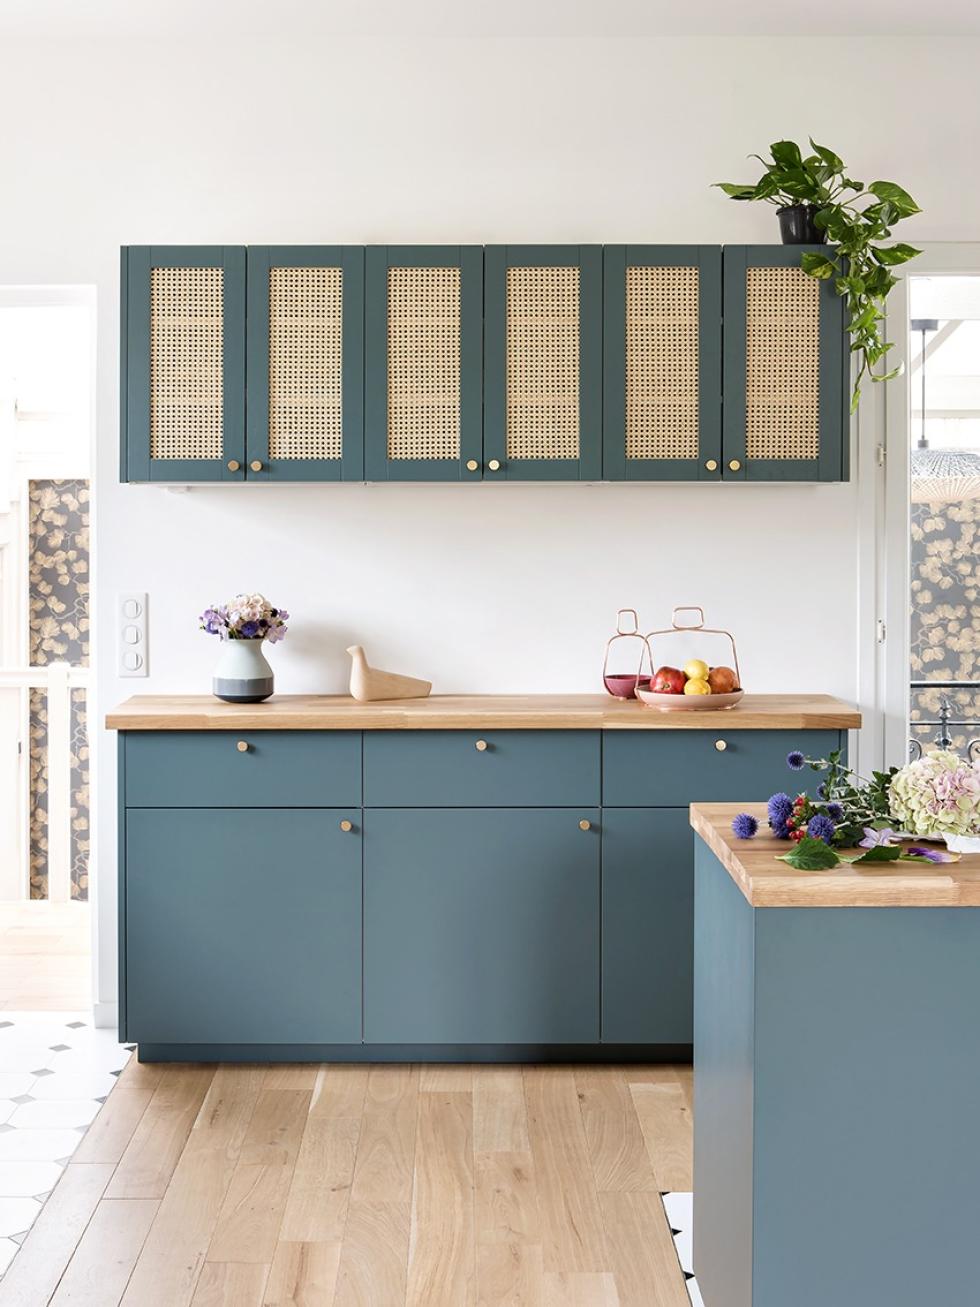 Kitchen in Blue 05 - Bleu paon